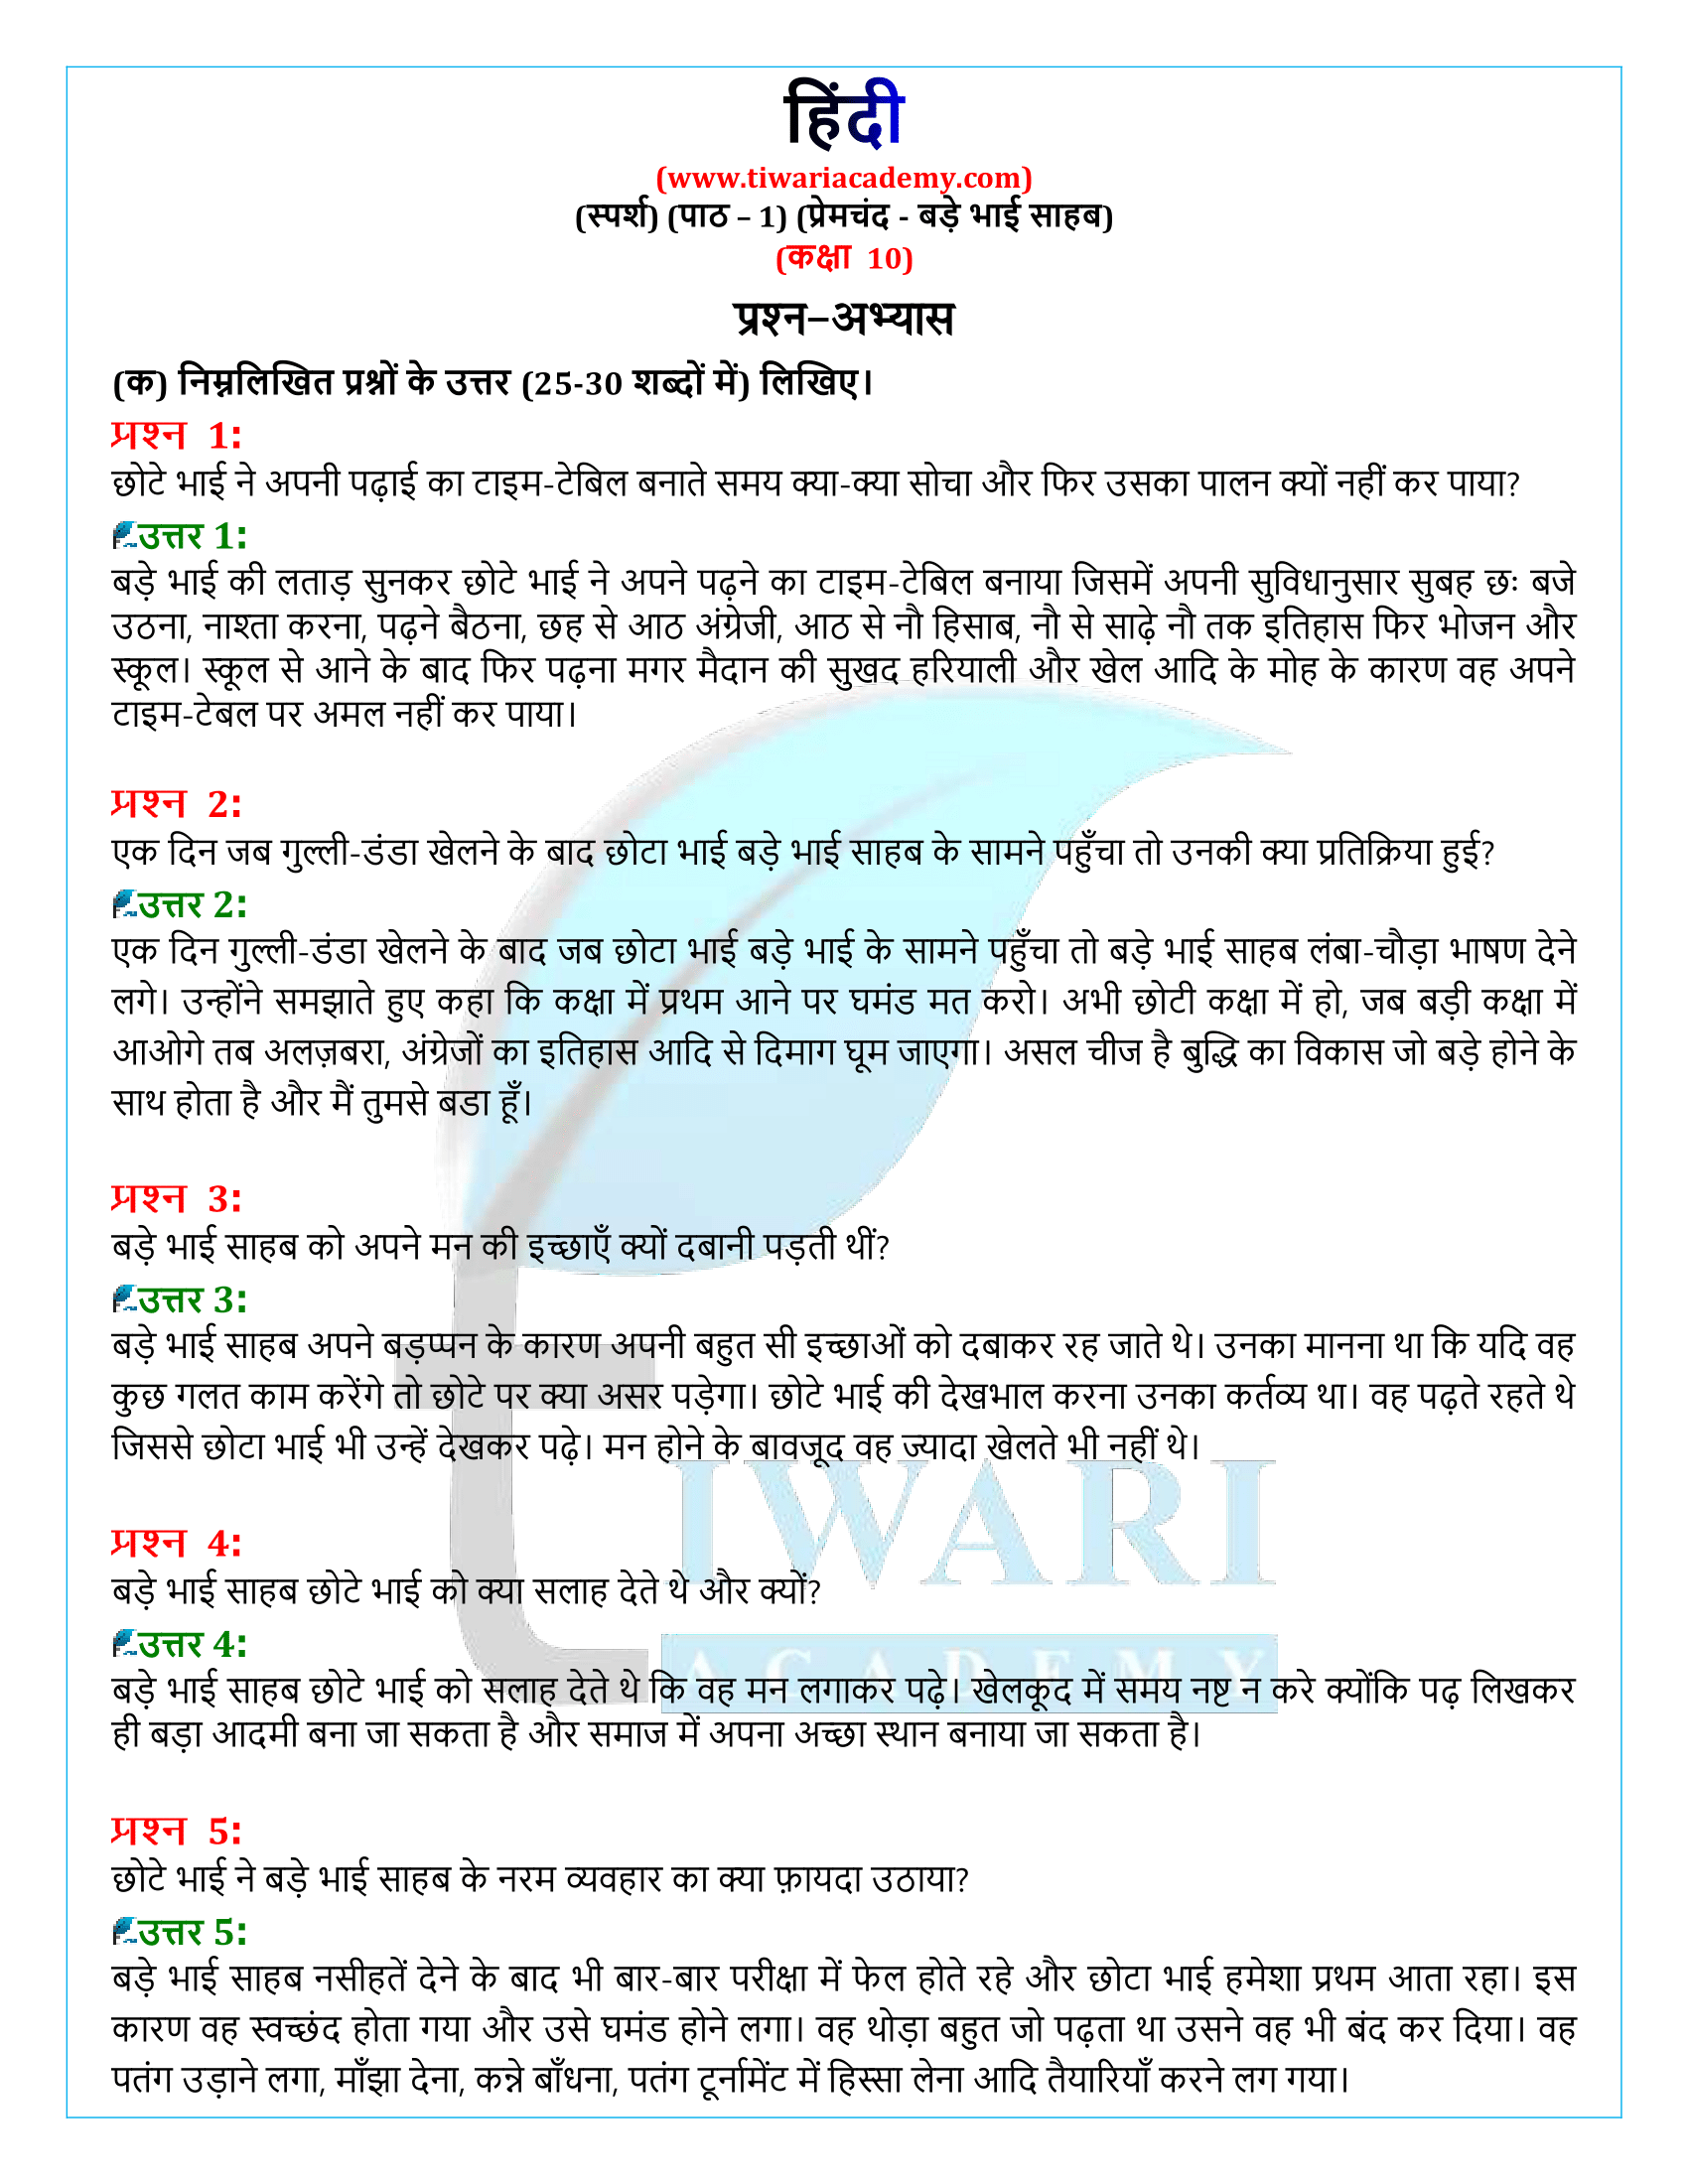 कक्षा 10 हिंदी स्पर्श अध्याय 1 के प्रश्न उत्तर